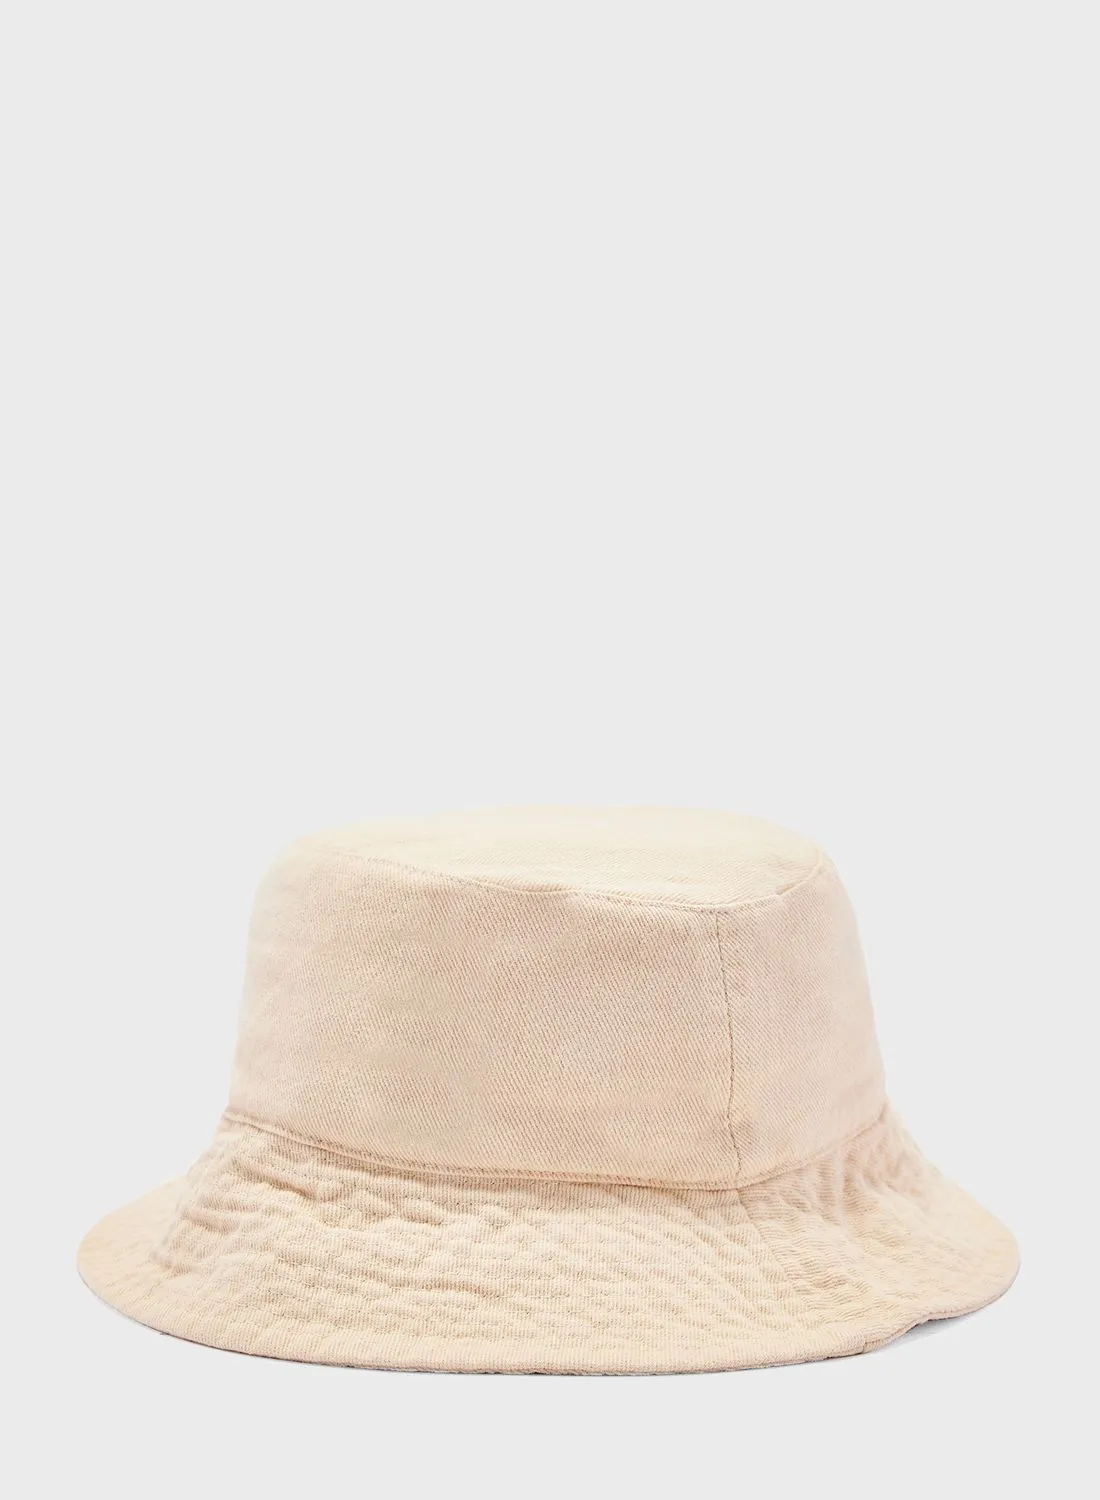 قبعة دلو روبي بيانكا